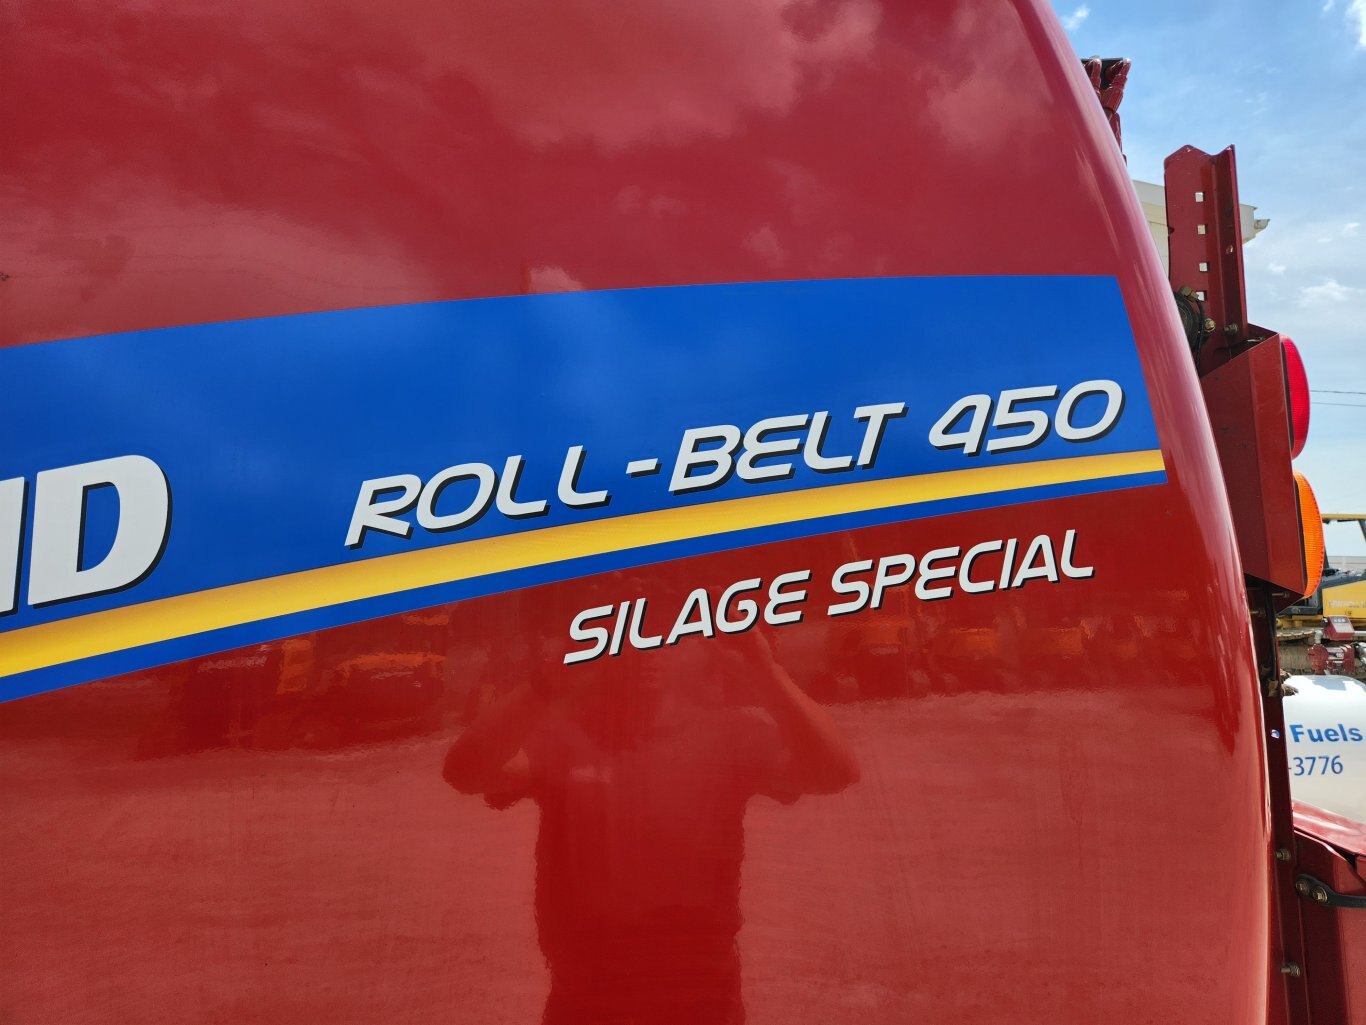 2021 New Holland Roll Belt 450